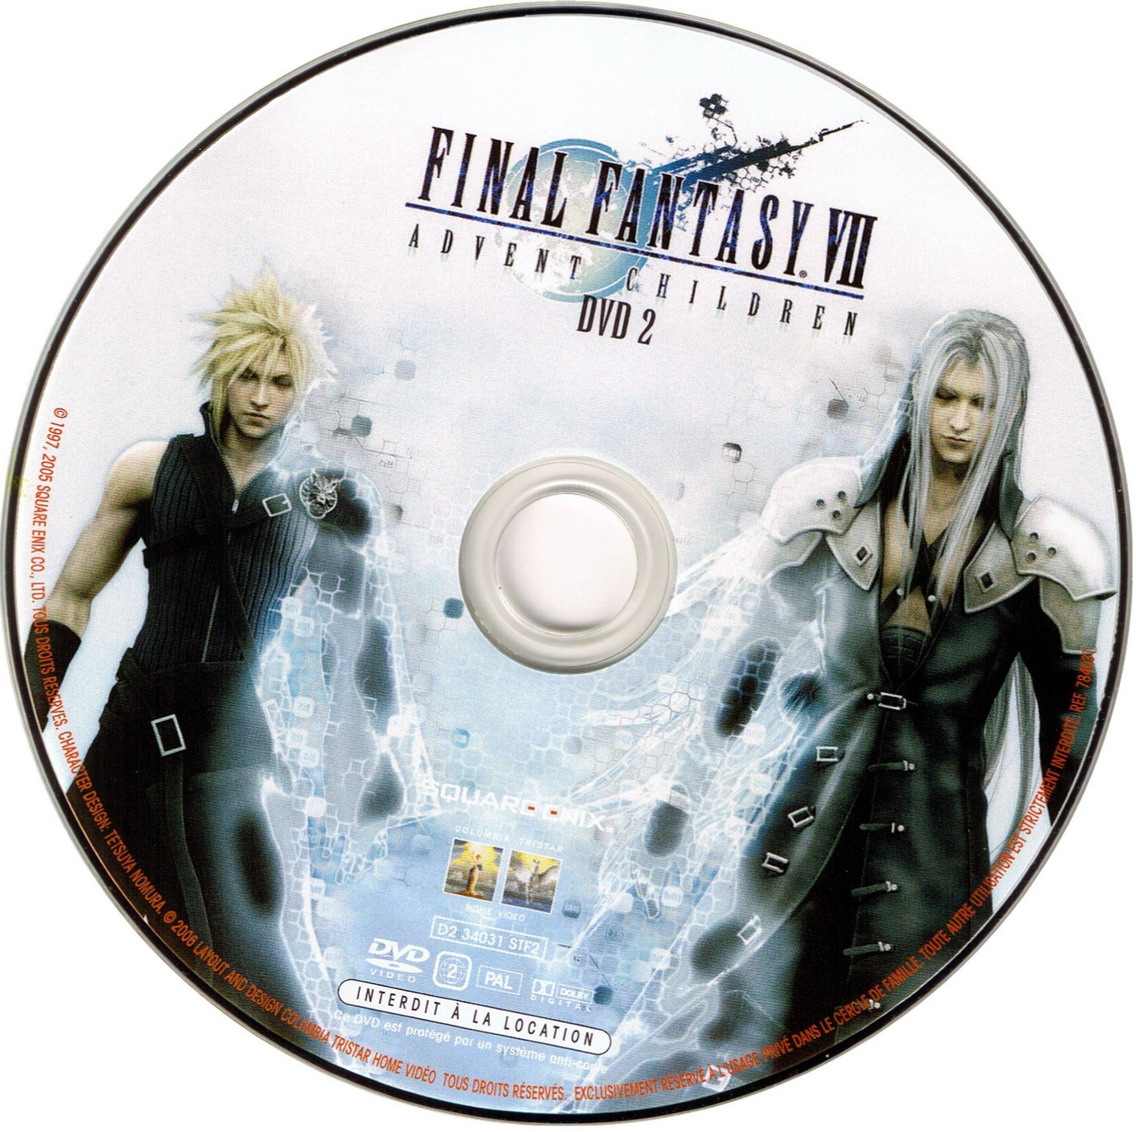 Final Fantasy VII Advent Children dvd 2